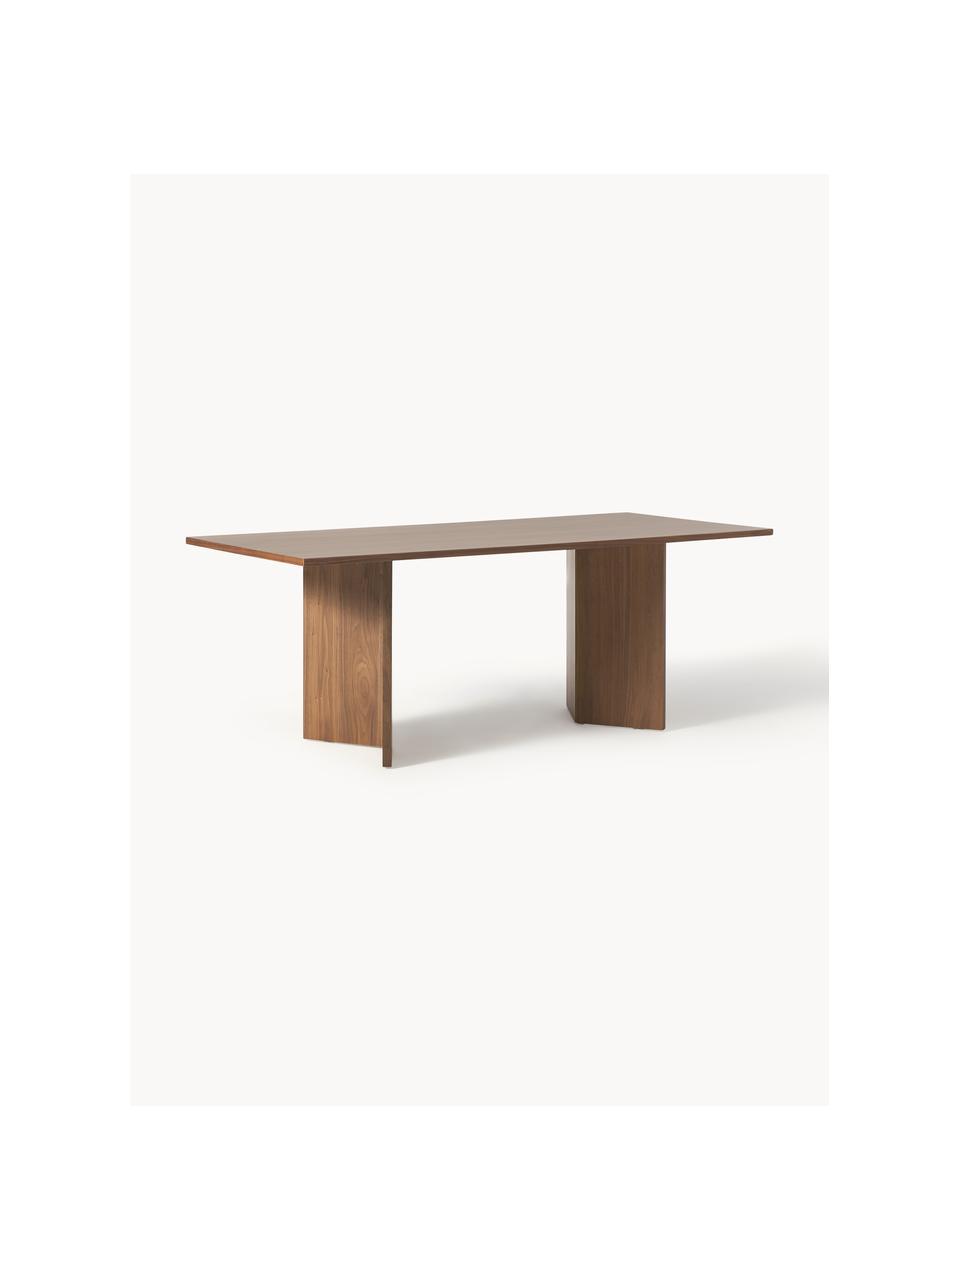 Drevený jedálenský stôl Toni, 200 x 90 cm, MDF-doska strednej hustoty s orechovou dyhou, lakované

Tento produkt je vyrobený z trvalo udržateľného dreva s certifikátom FSC®., Orechové drevo, Š 200 x D 90 cm